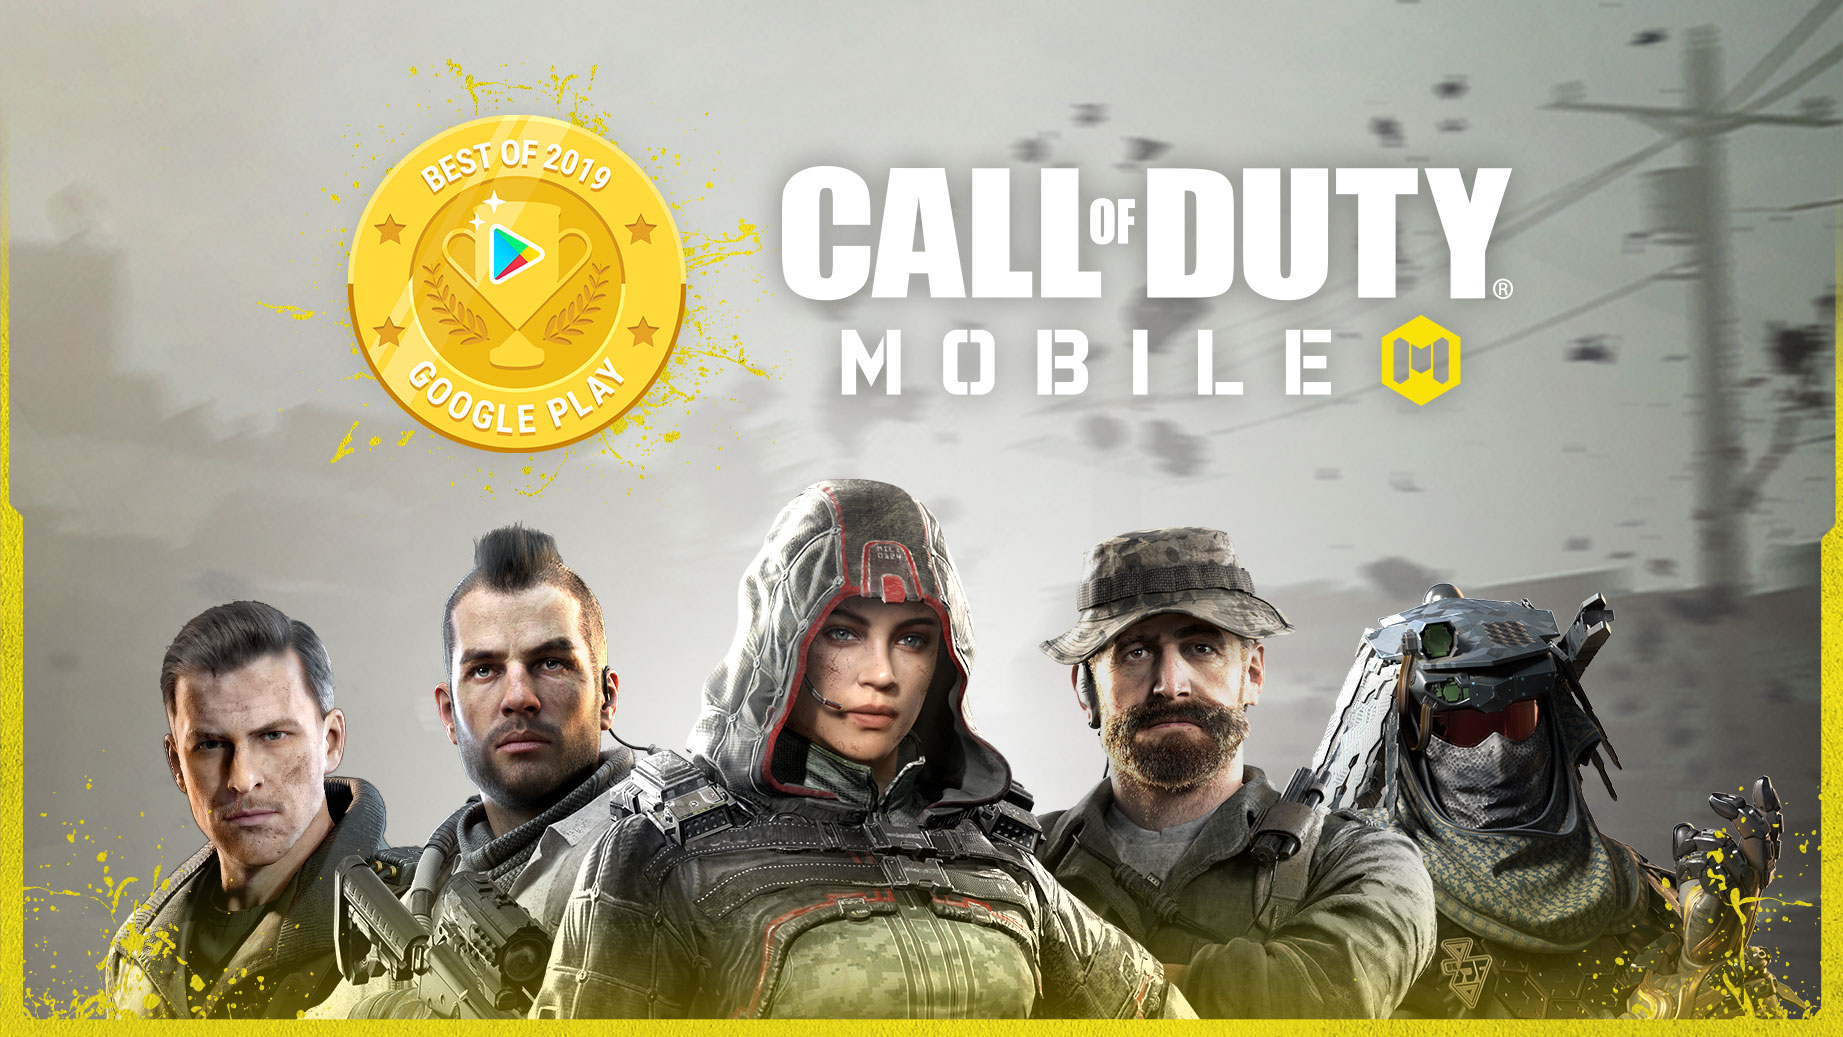 Promoção Google Play e Call of Duty Mobile! - Trivia PW